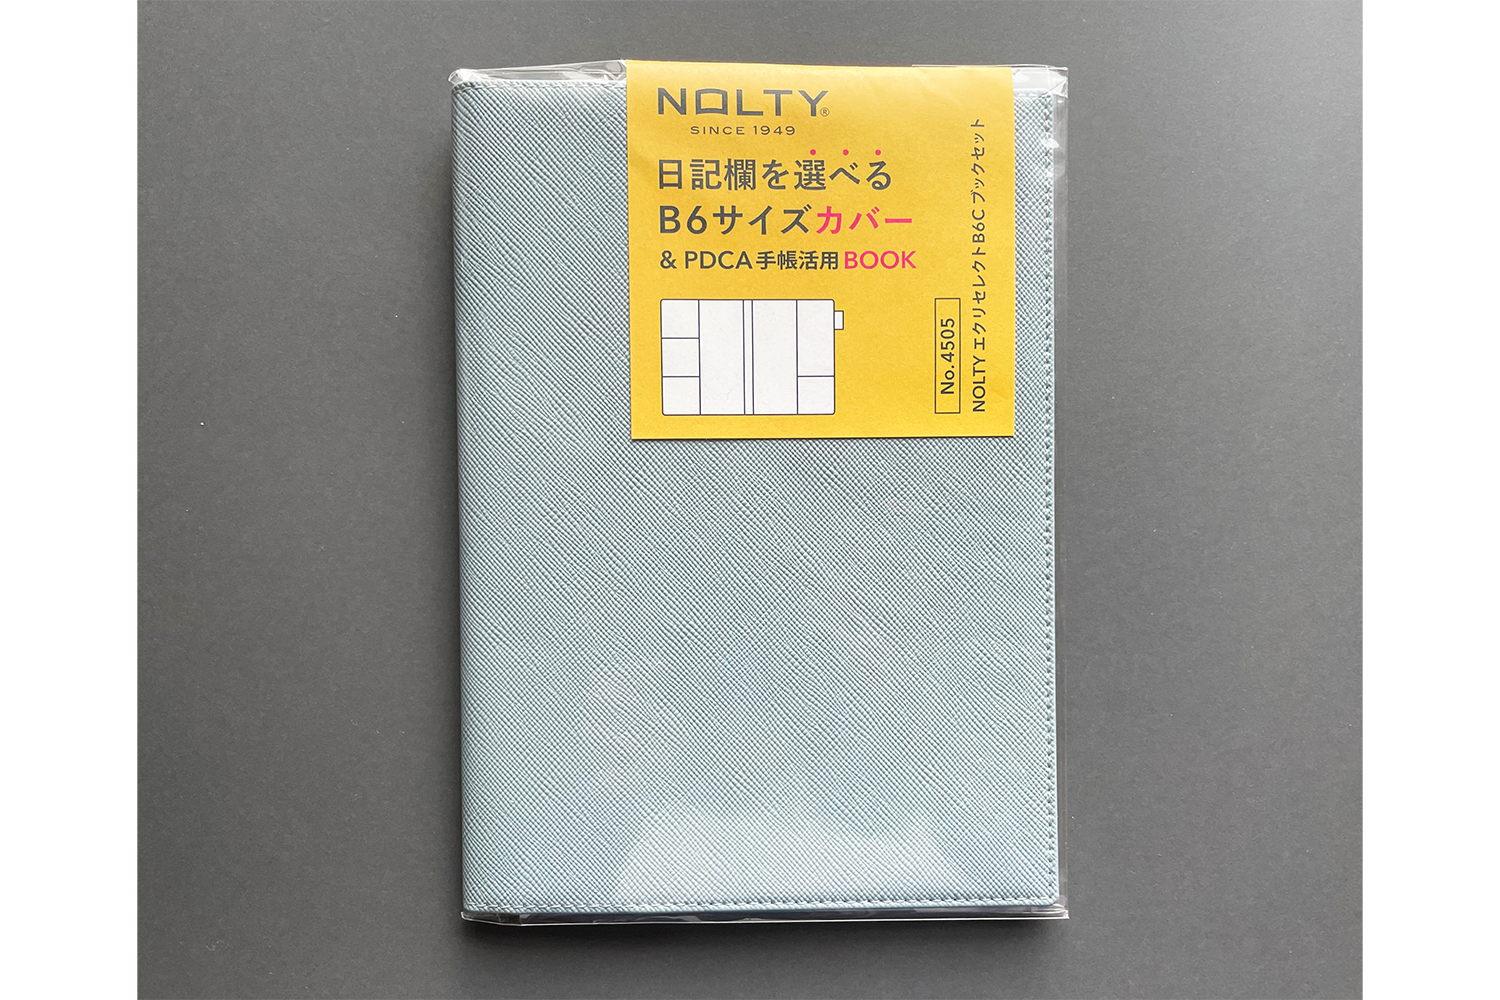 手帳の活用法、そしてカスタマイズする喜びが味わえる手帳カバー「NOLTY エクリセレクト B6 Cブックセット」 ライフハッカー・ジャパン